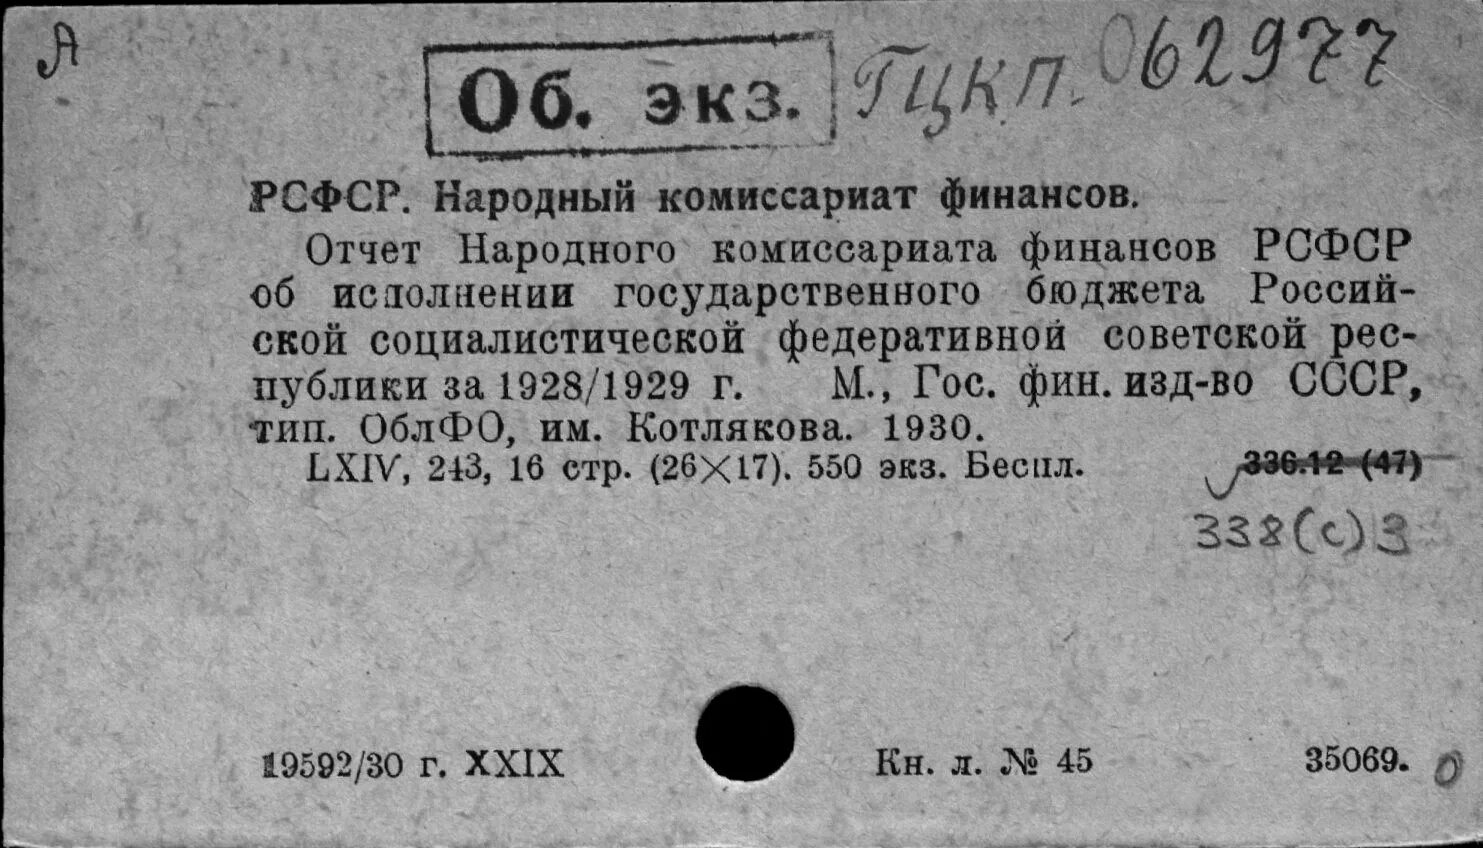 Народный комиссариат здравоохранения. Григорьев д.е 1411.